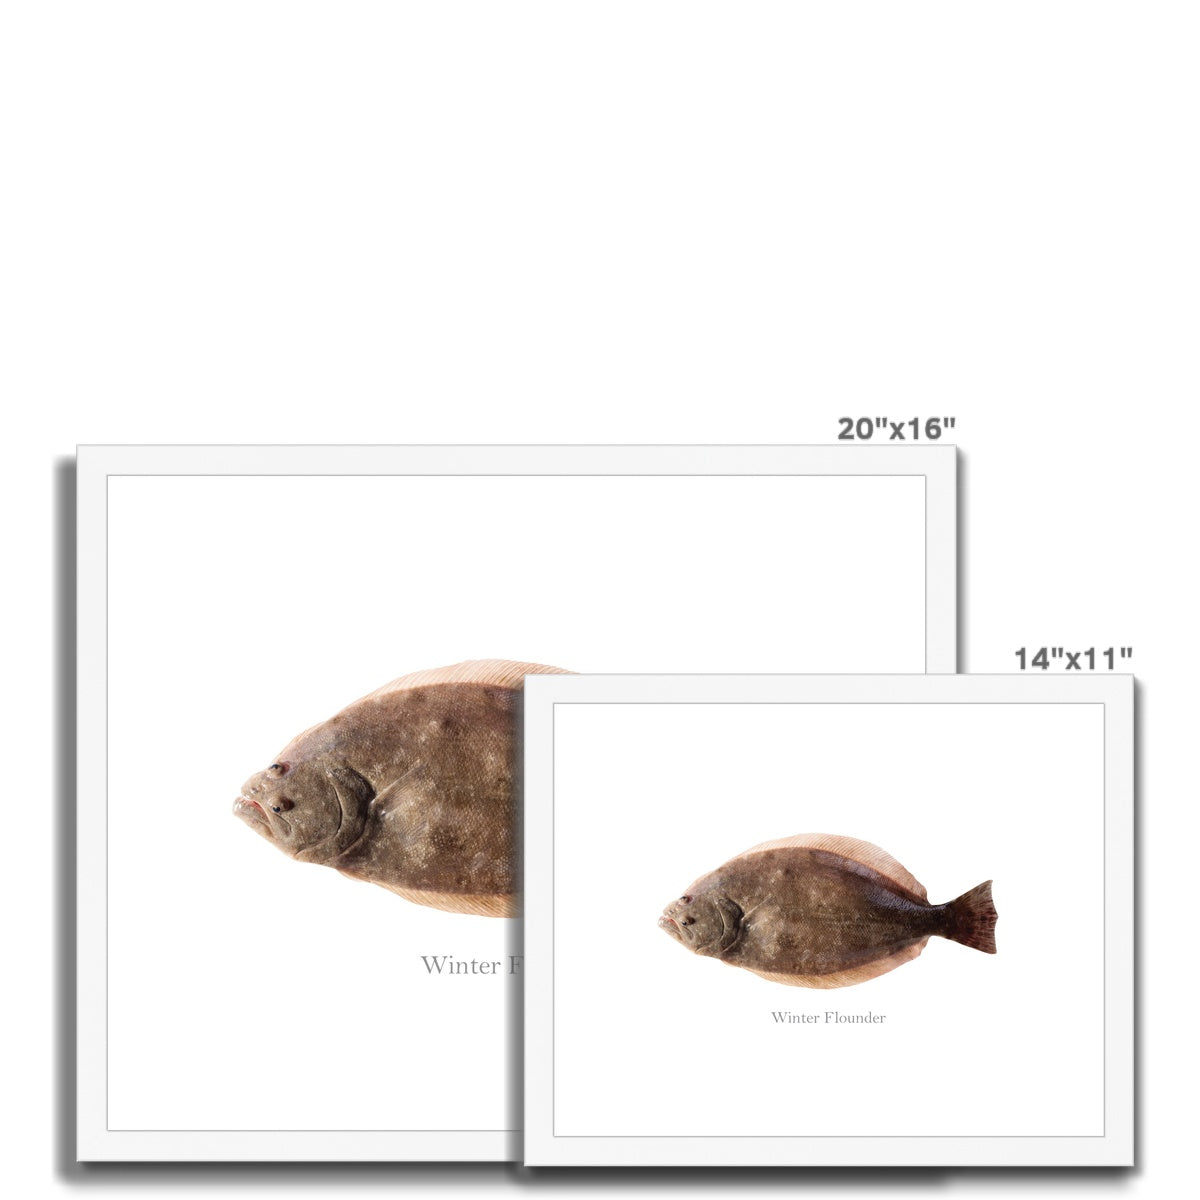 Winter Flounder - Framed & Mounted Print